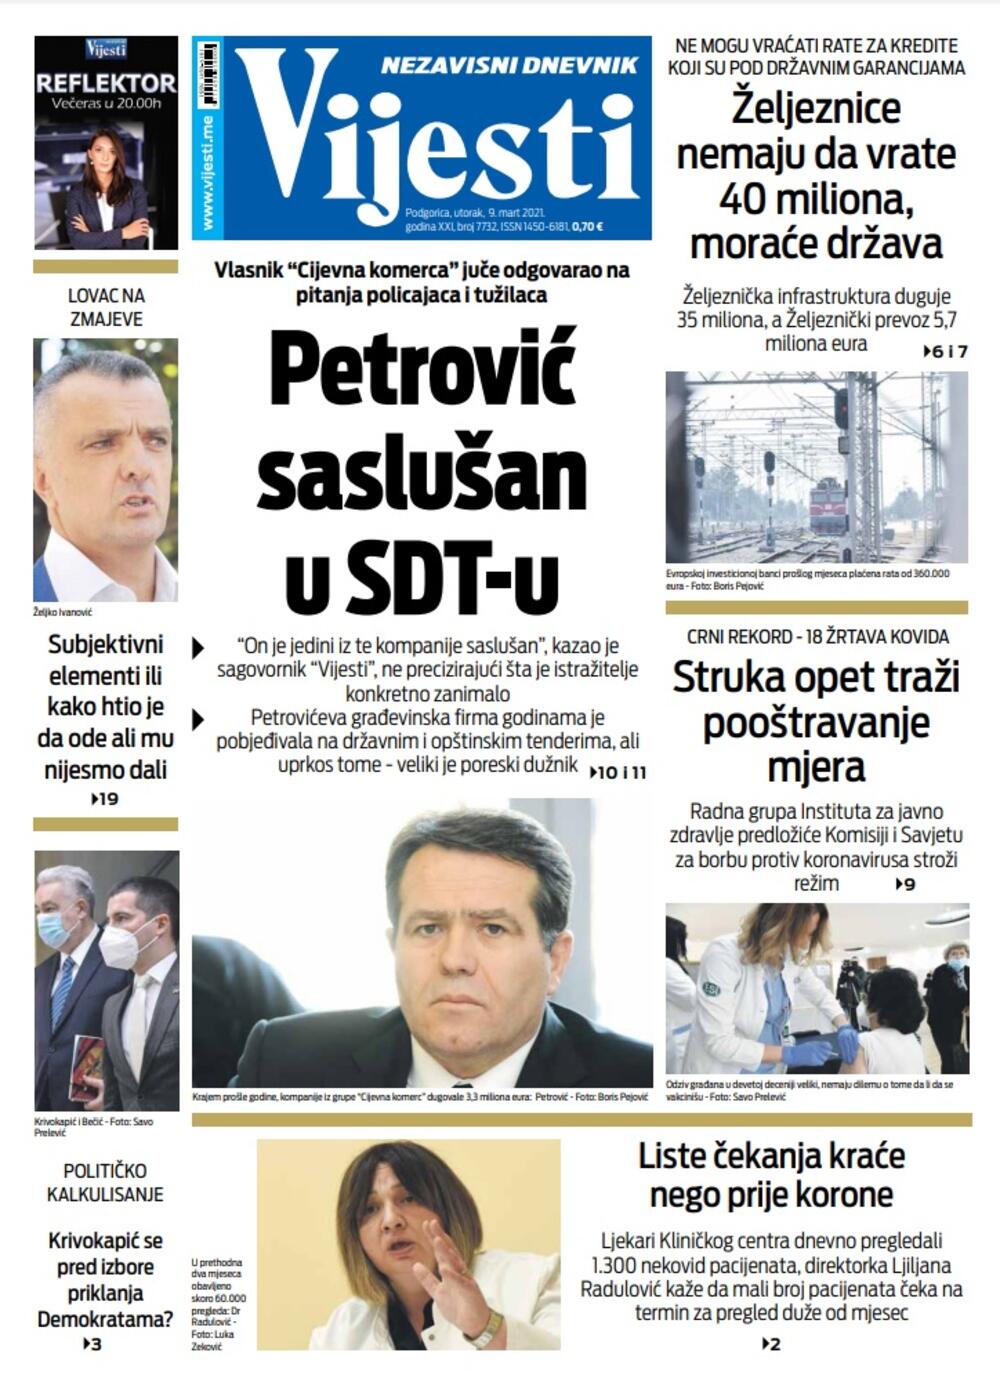 Naslovna strana Vijesti za 9. mart 2021., Foto: Vijesti